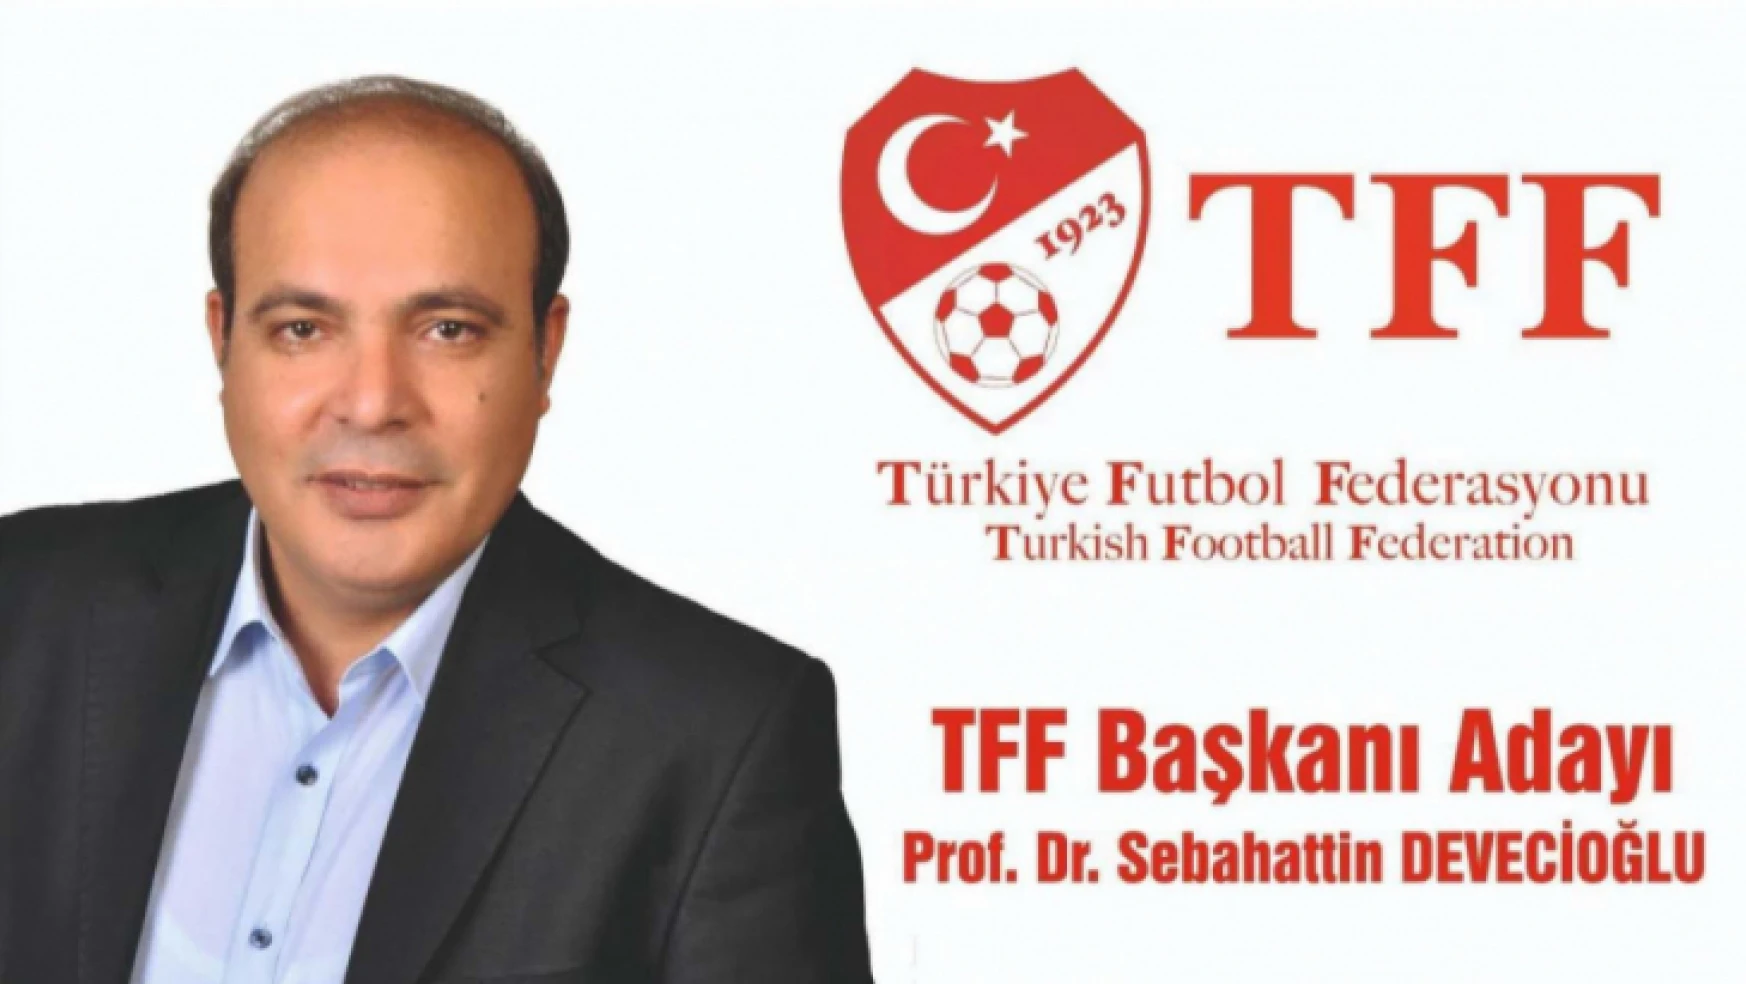 Prof. Dr. Sebahattin Devecioğlu TFF Başkan Adayı